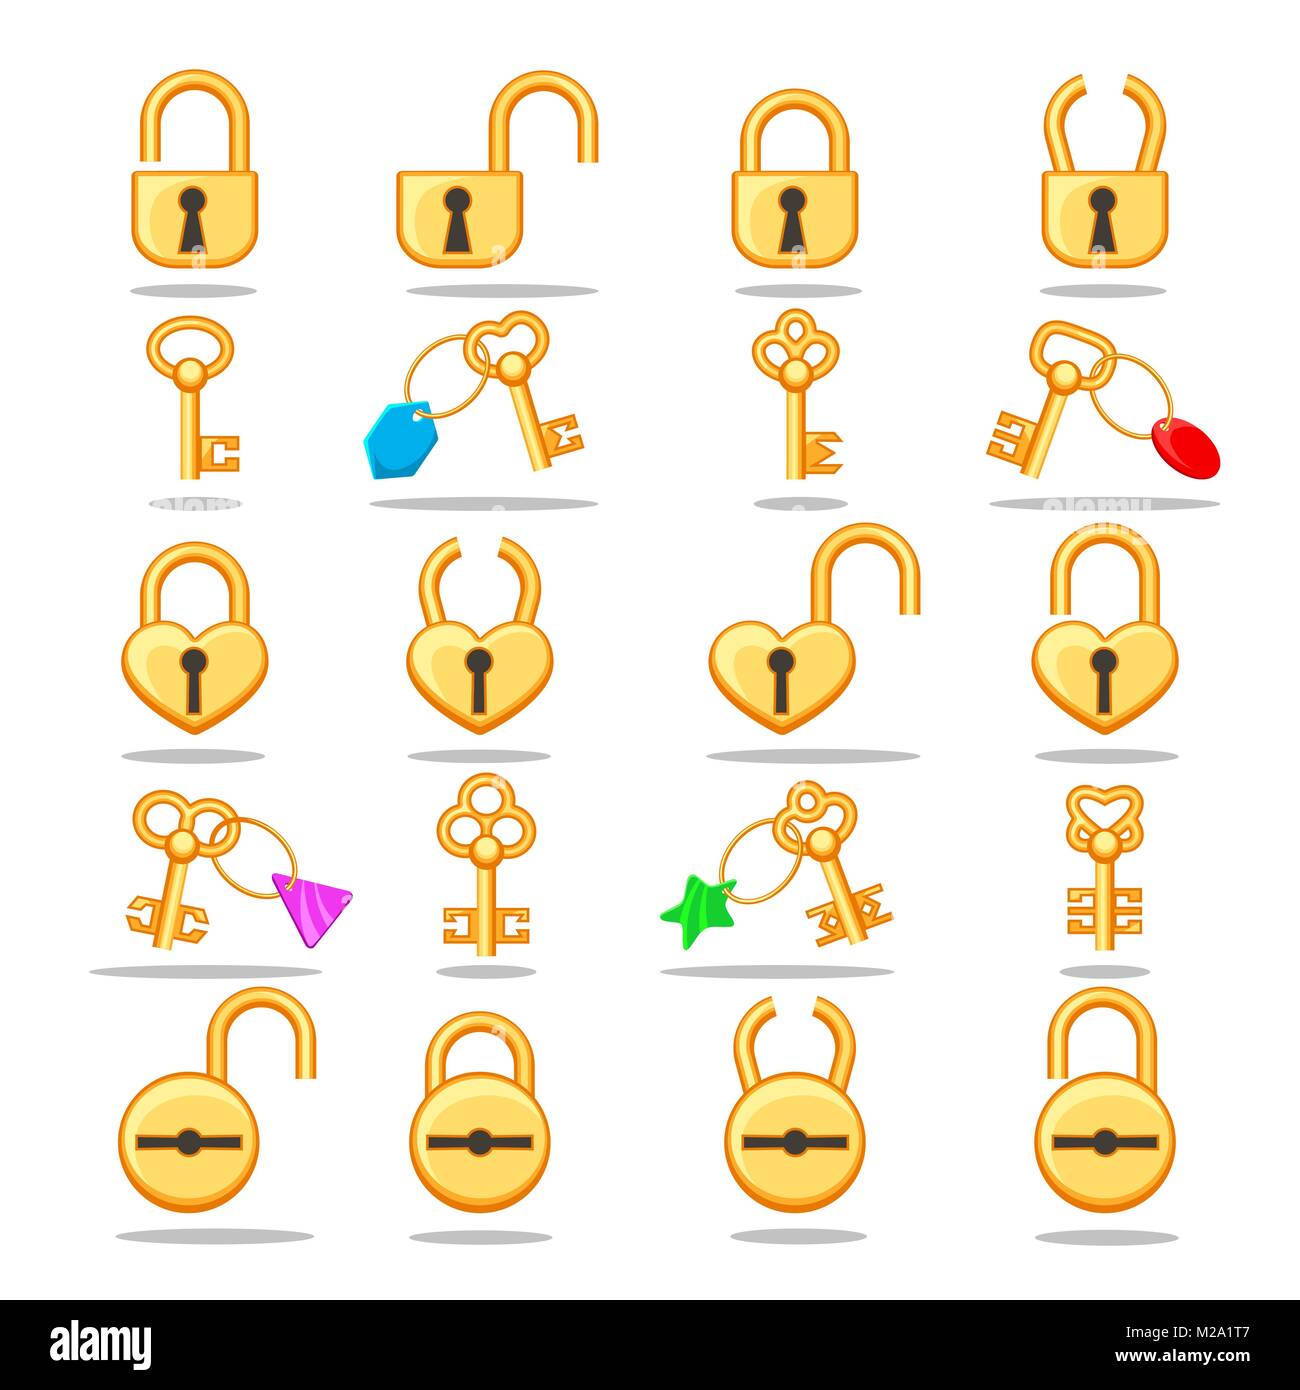 Schlösser und Schlüssel. Vektor gold Vorhängeschlösser und verschiedenen goldenen Schlüssel für Ver- und entriegeln sich Symbole auf weißem Hintergrund Stock Vektor